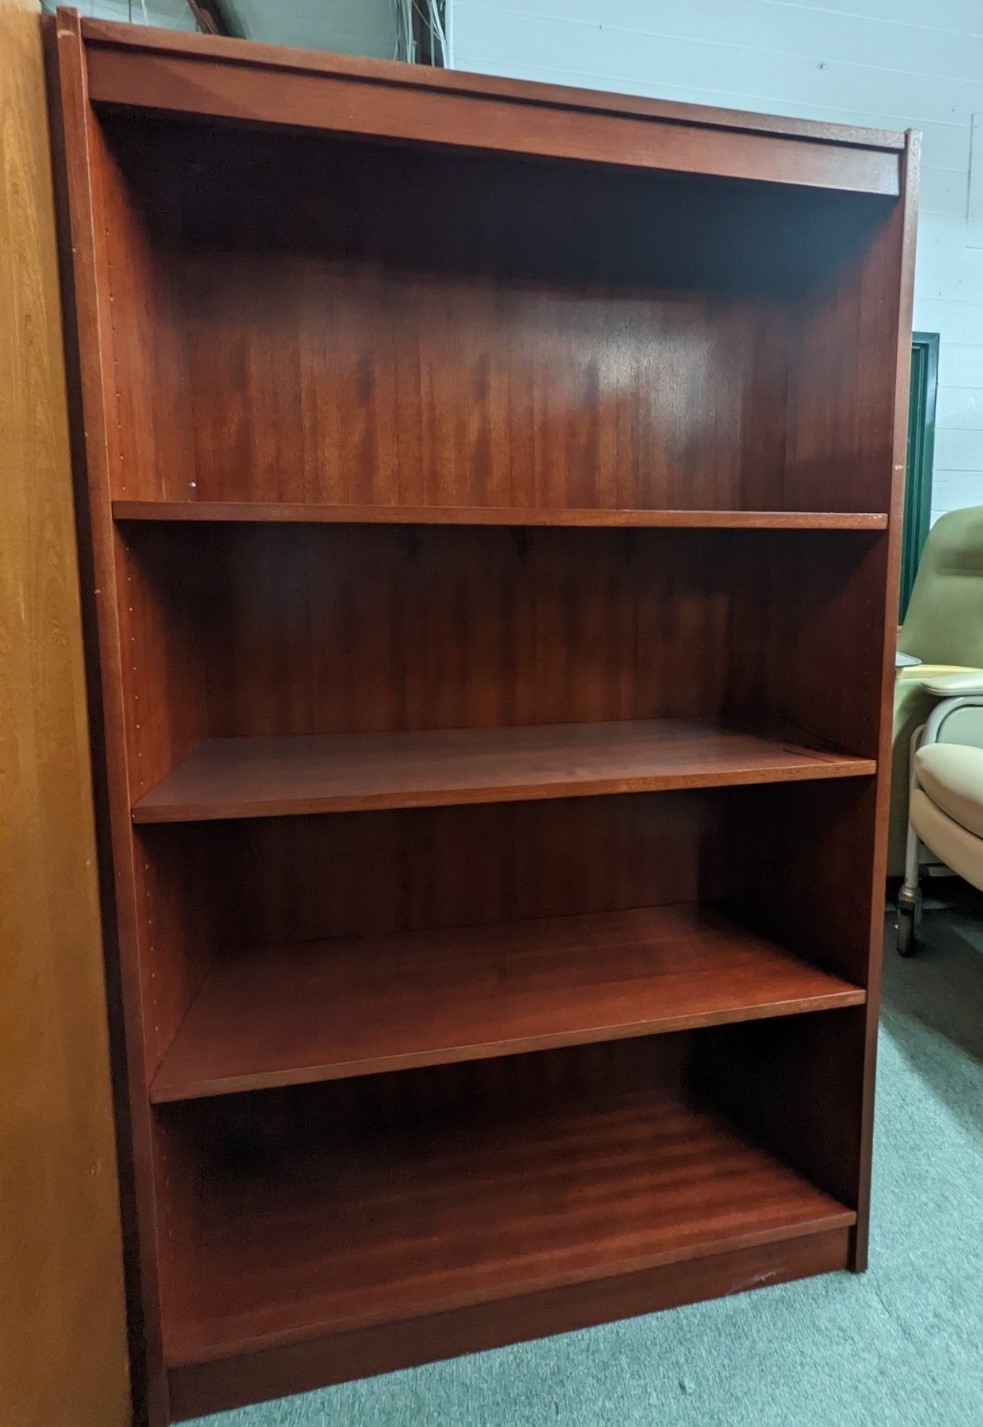 Used 4-Shelf Bookcase